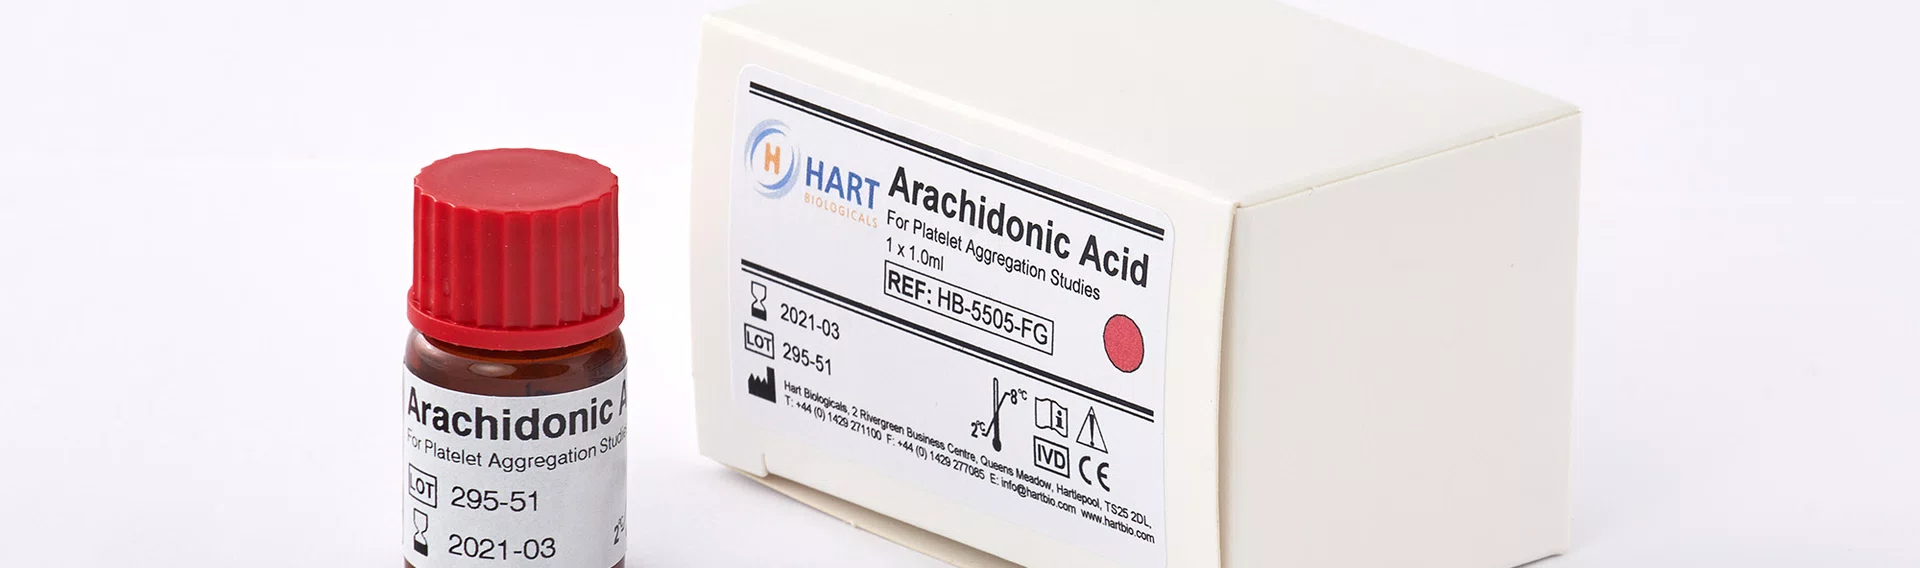 Hart Biologicals adds Arachidonic Acid to its MEA line